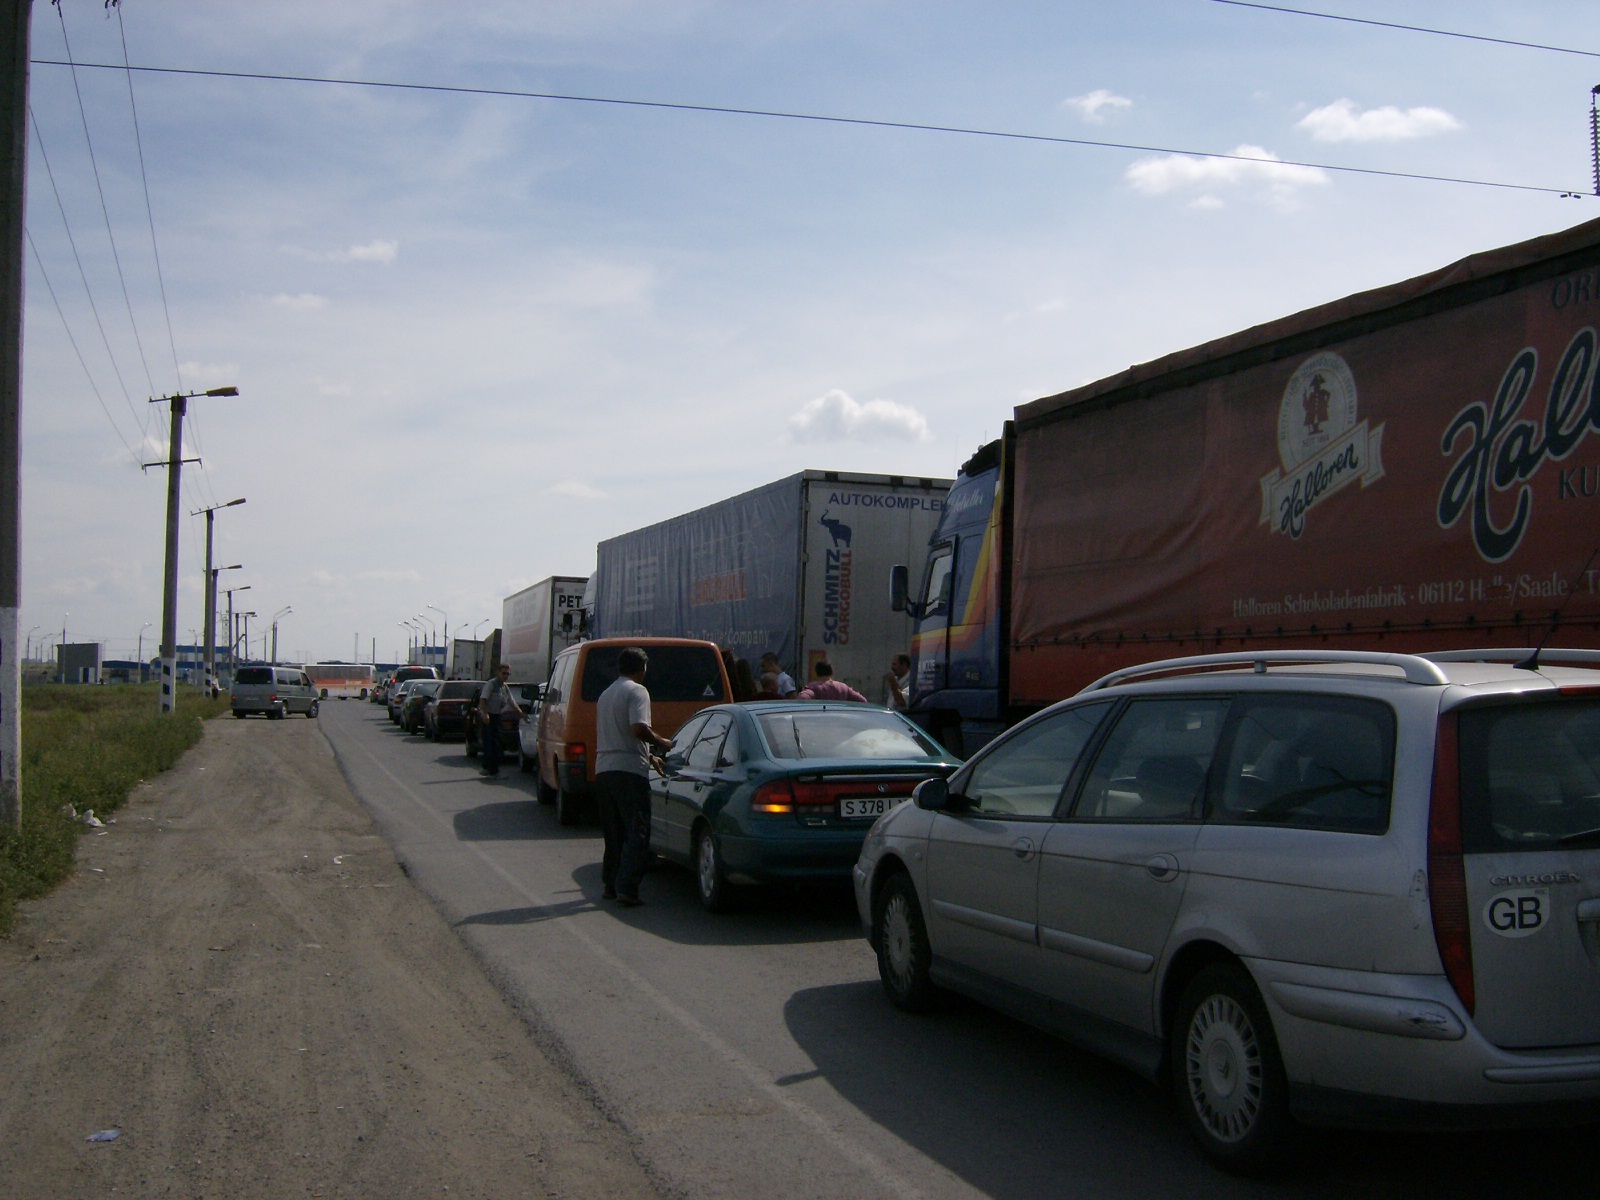 Queue at Russian/Kazakhstan border